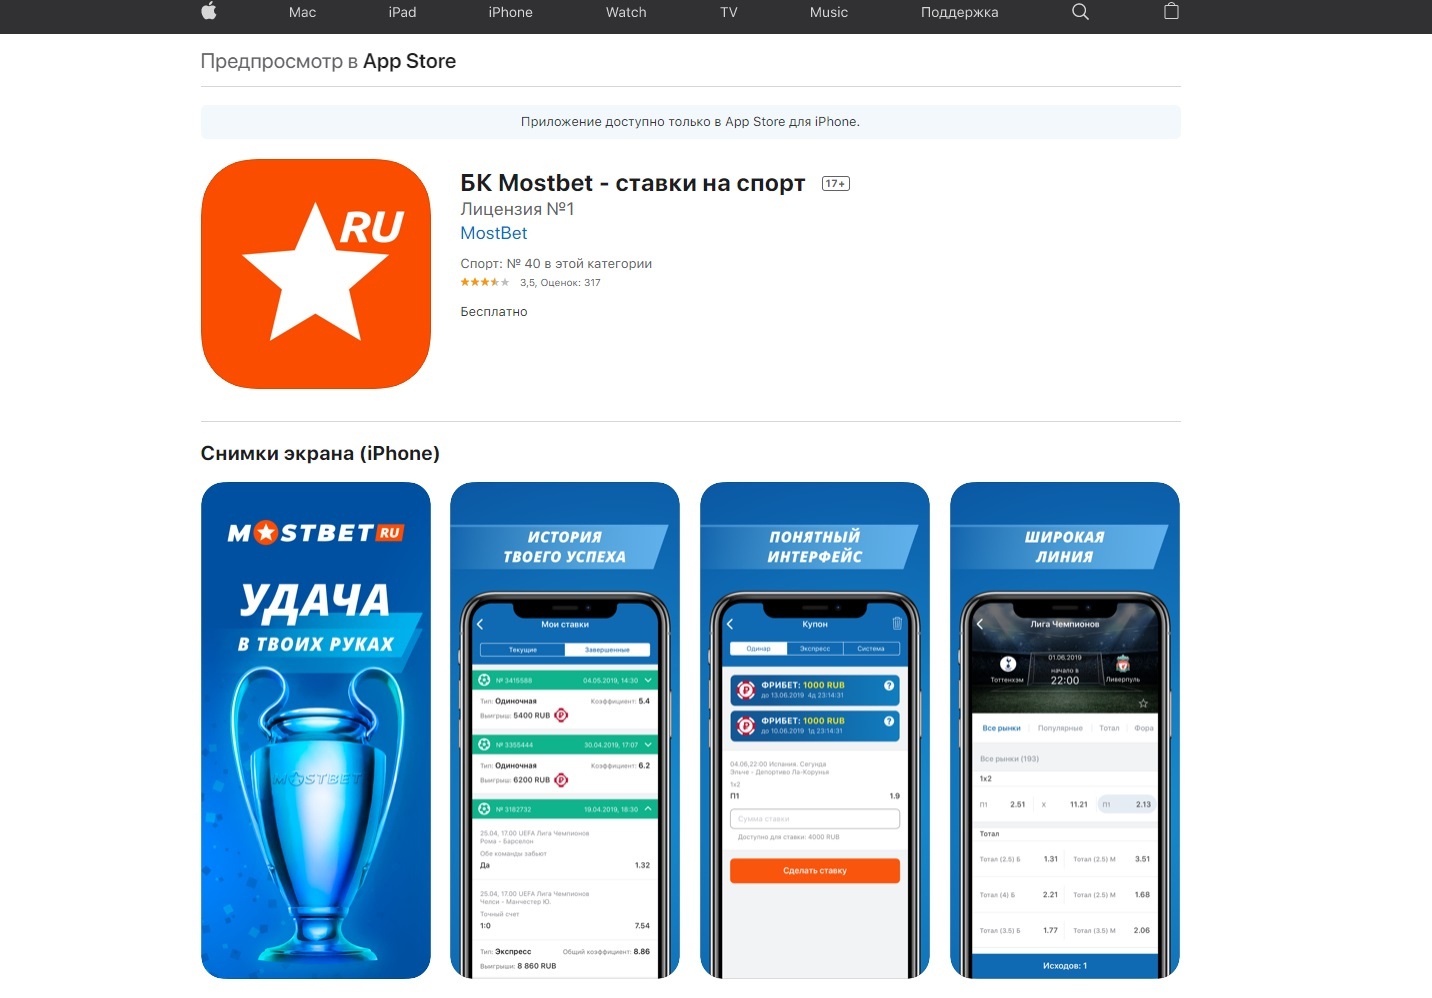 скачать приложение мостбет русском языке без интернета